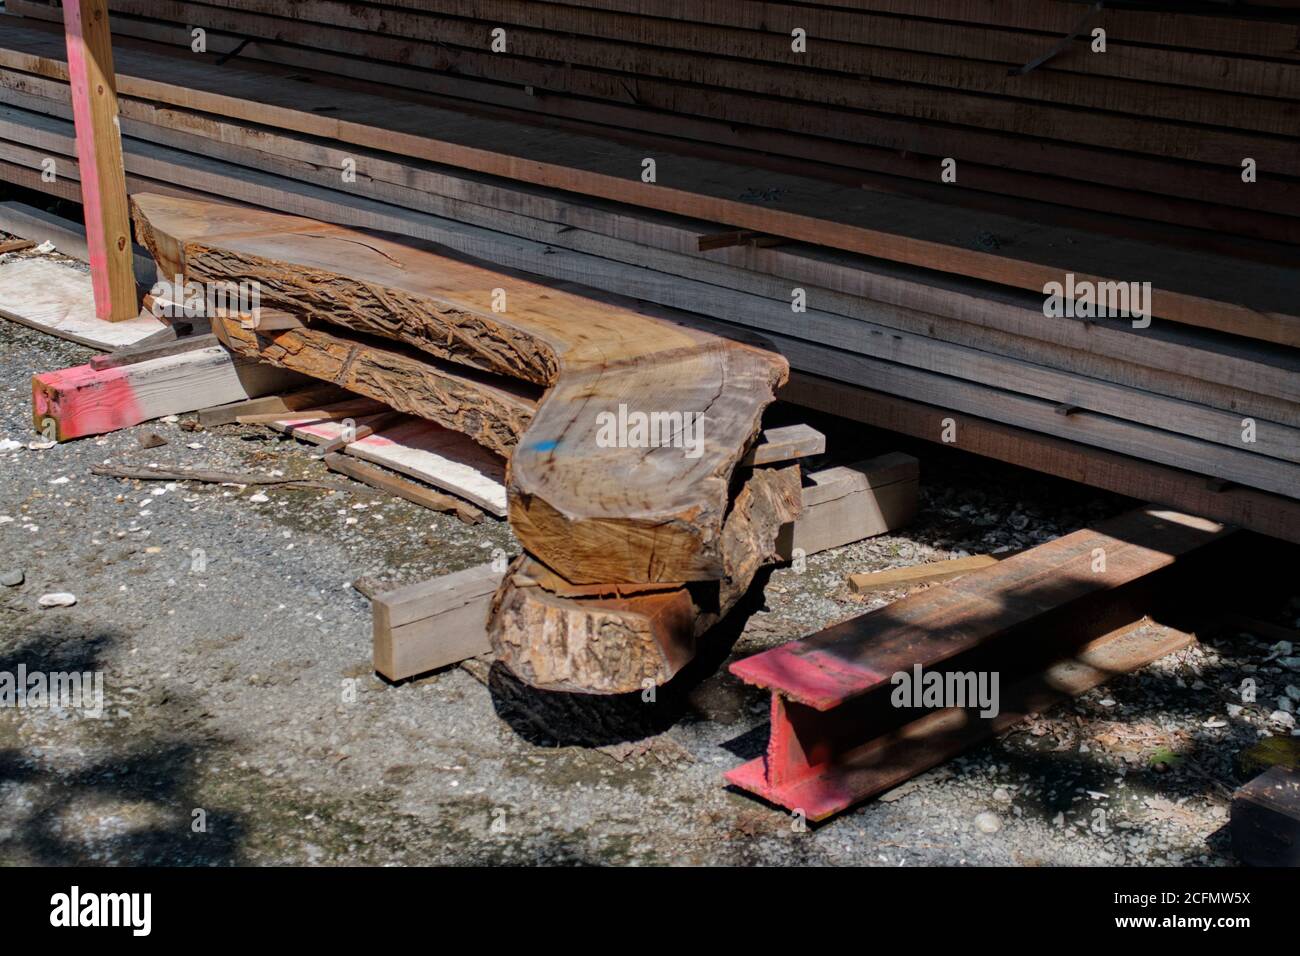 Im Holzlagerbereich des Chesapeake Bay Maritime Museum, St. Michaels, MD, werden ein Satz grob gehauener Holzkniee gestapelt und fertig gestellt. Stockfoto